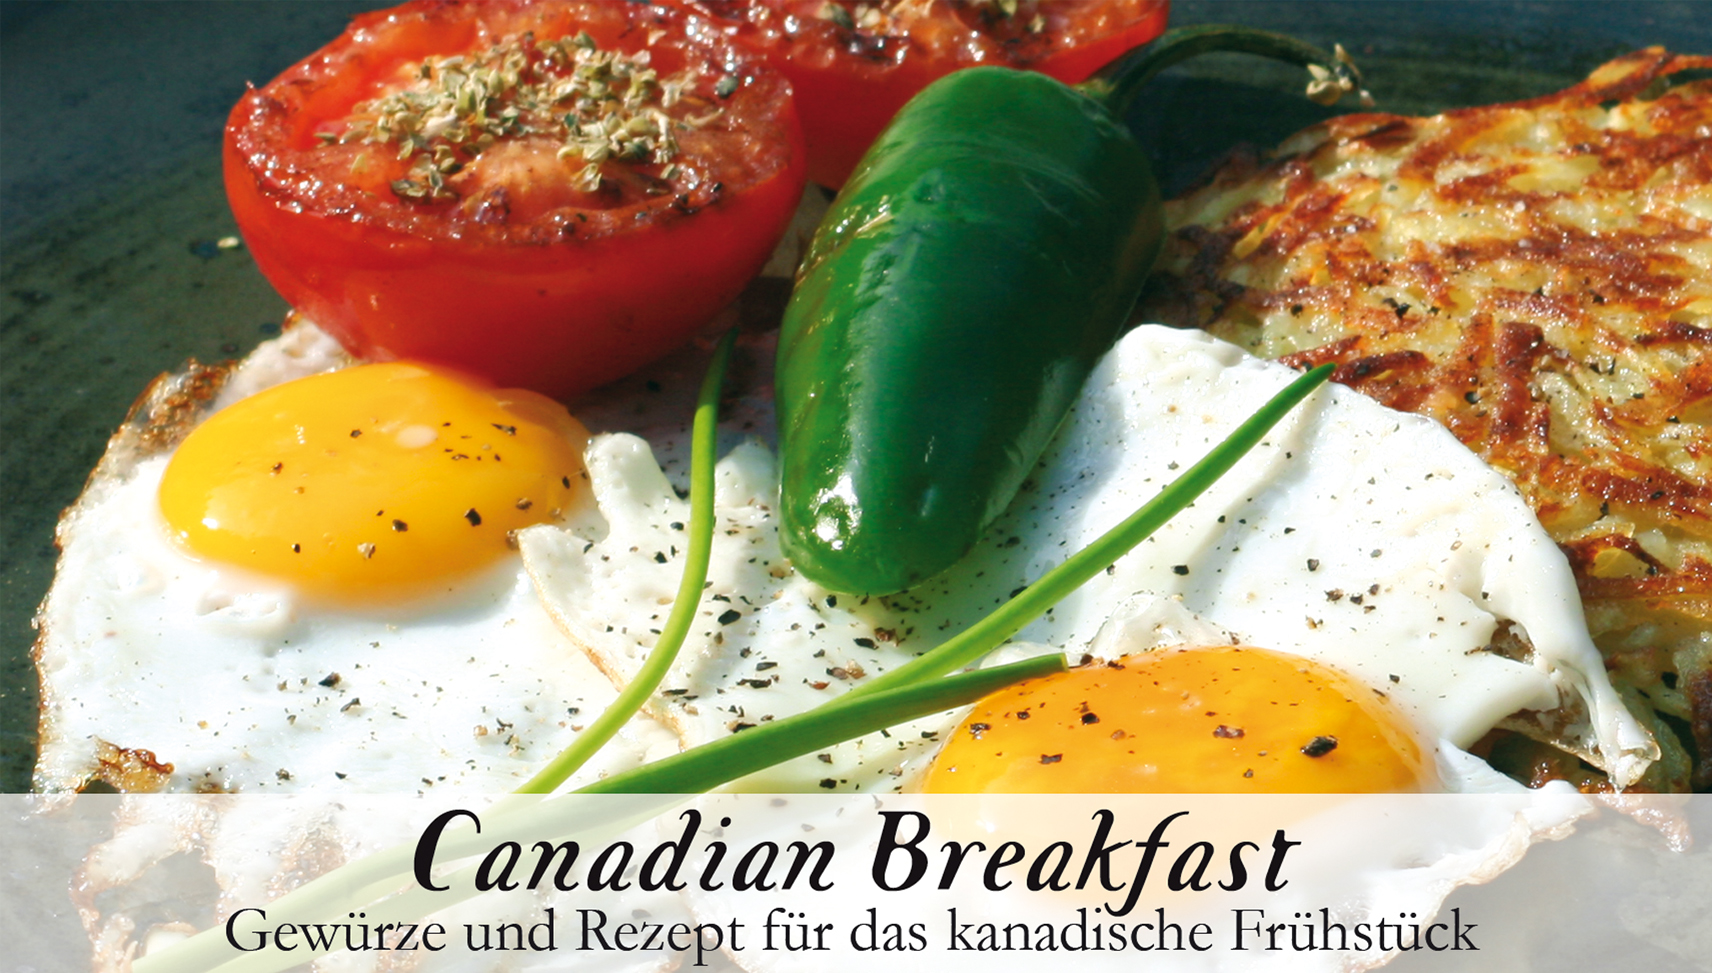 Canadian Breakfast-Gewürzkasten